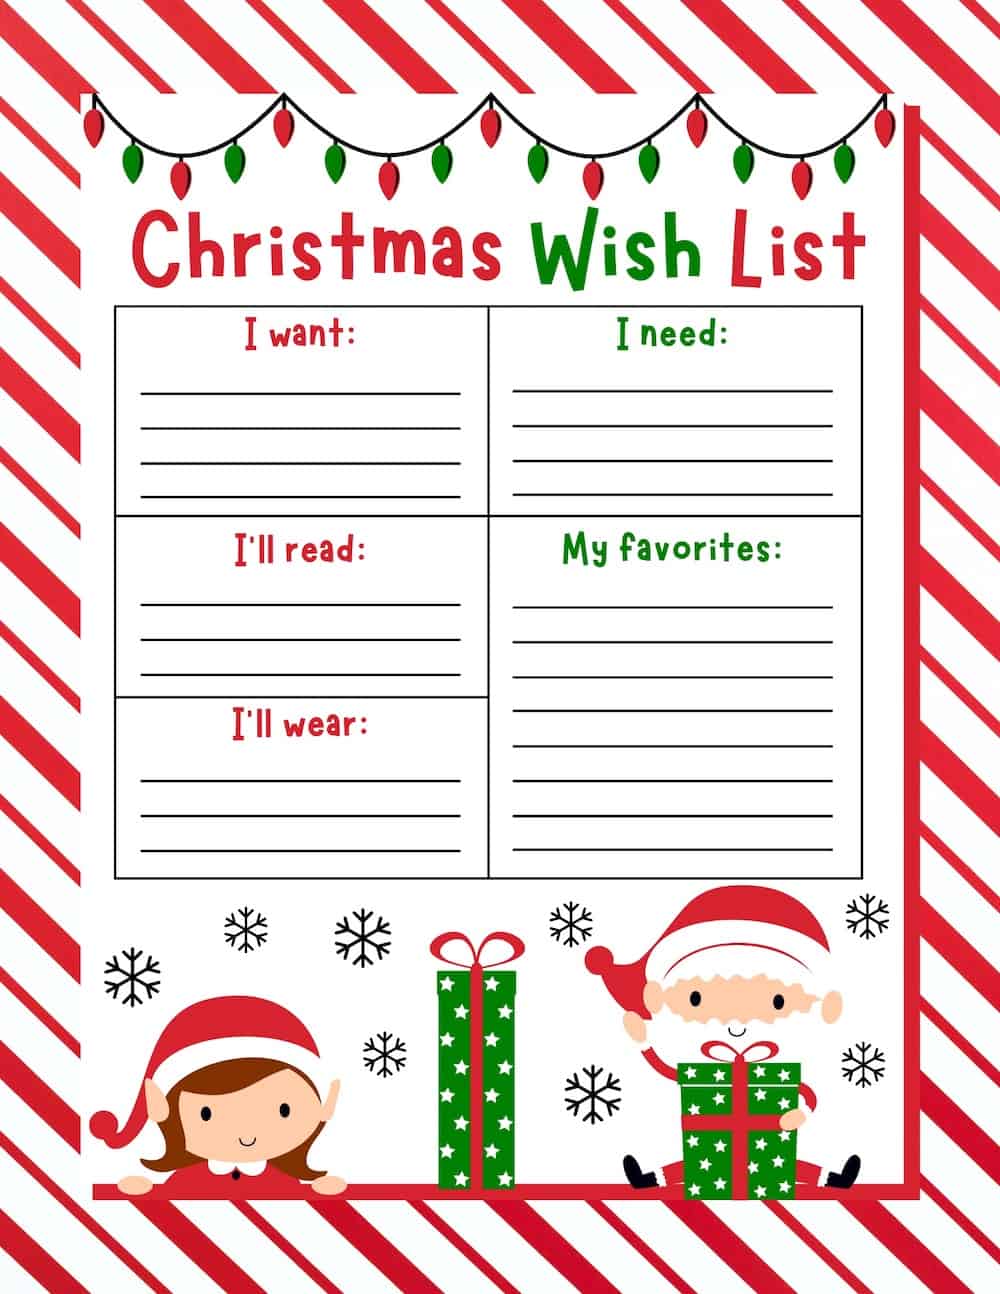 Festive Fun: Printable Christmas Wish List for Kids!